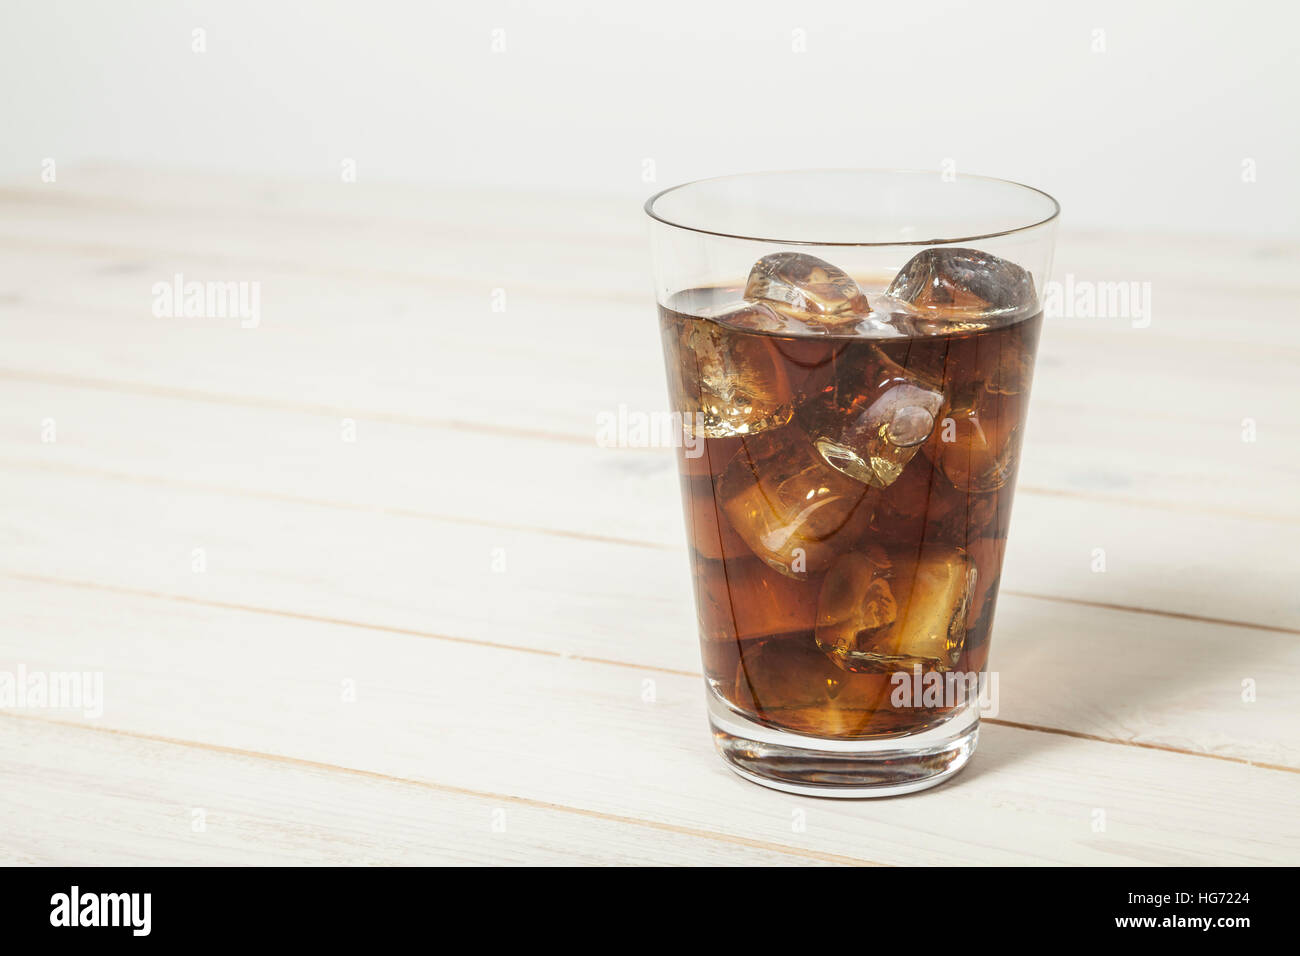 Coke on table Stock Photo